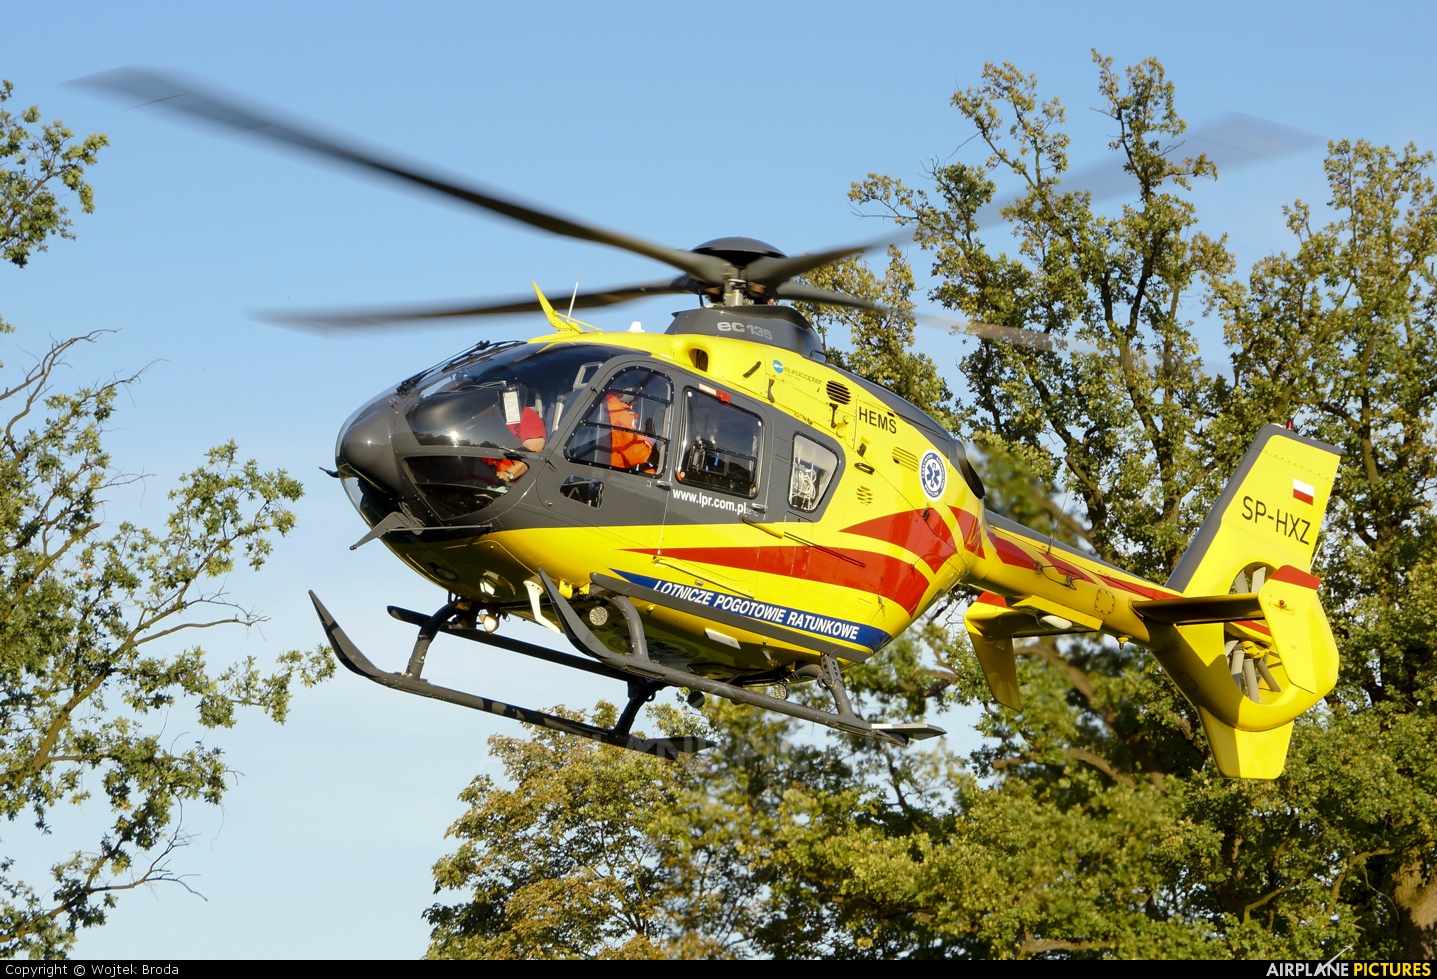 Polish Medical Air Rescue - Lotnicze Pogotowie Ratunkowe SP-HXZ aircraft at Leszno - Strzyżewice